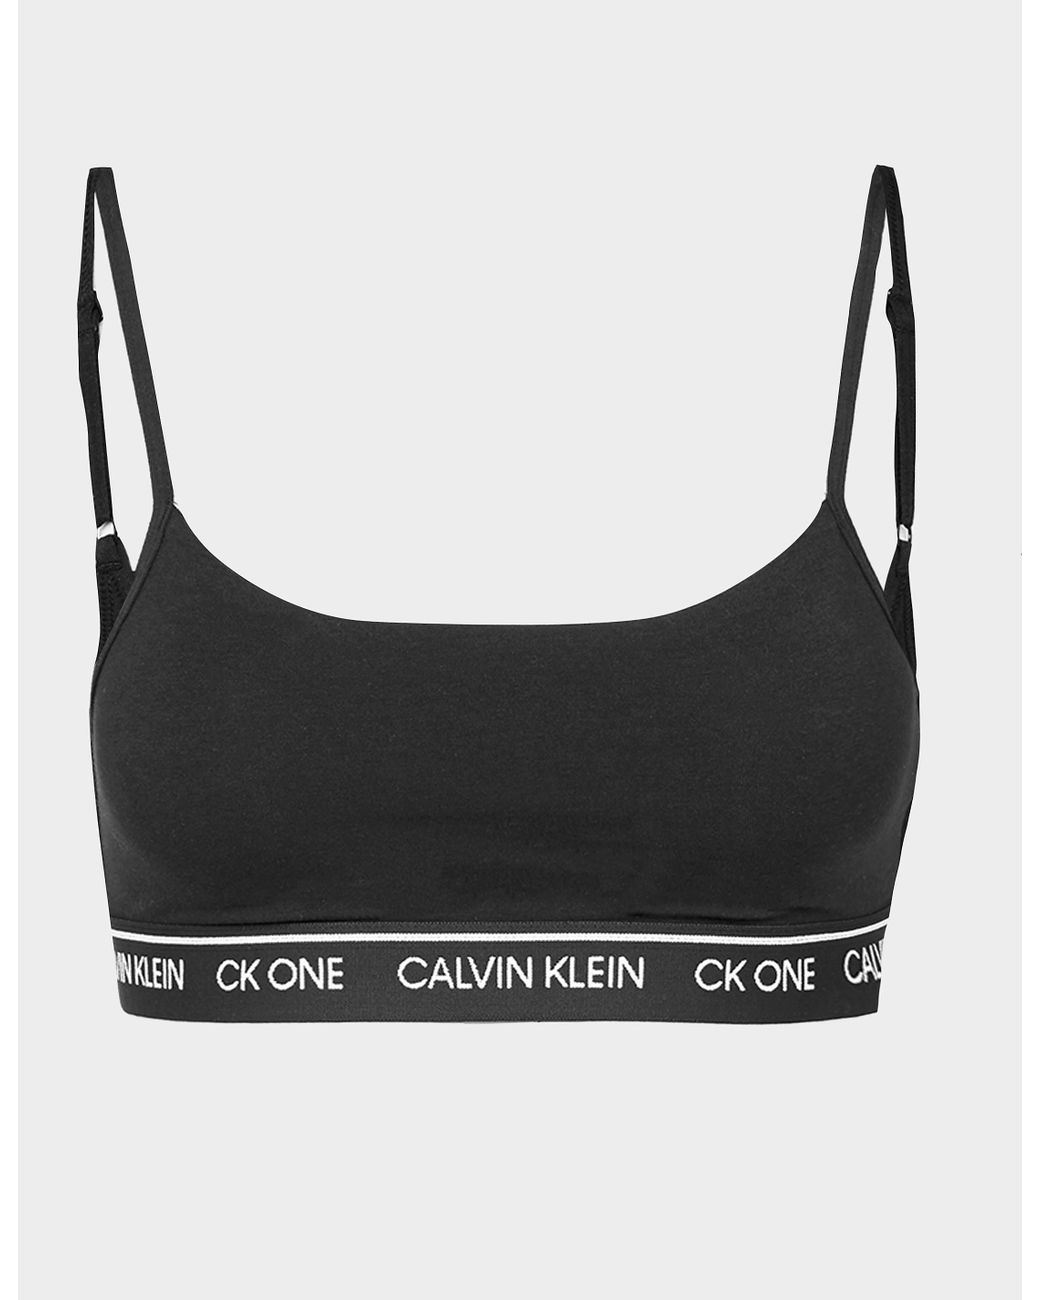 Calvin Klein Cotton Ck One Bralette in Black - Lyst